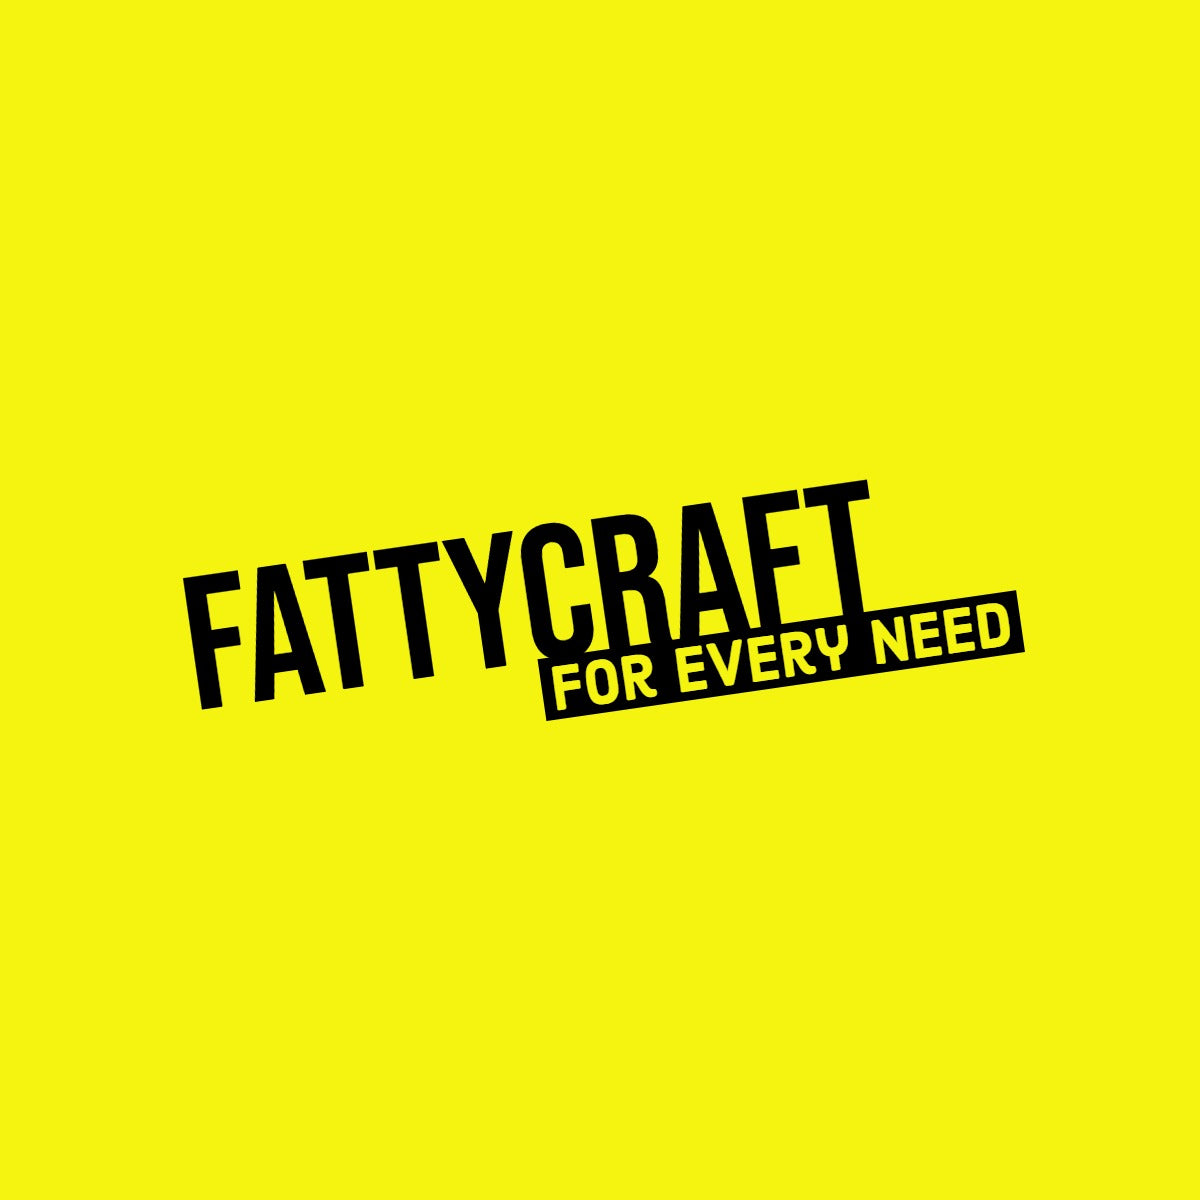 Fattycraft